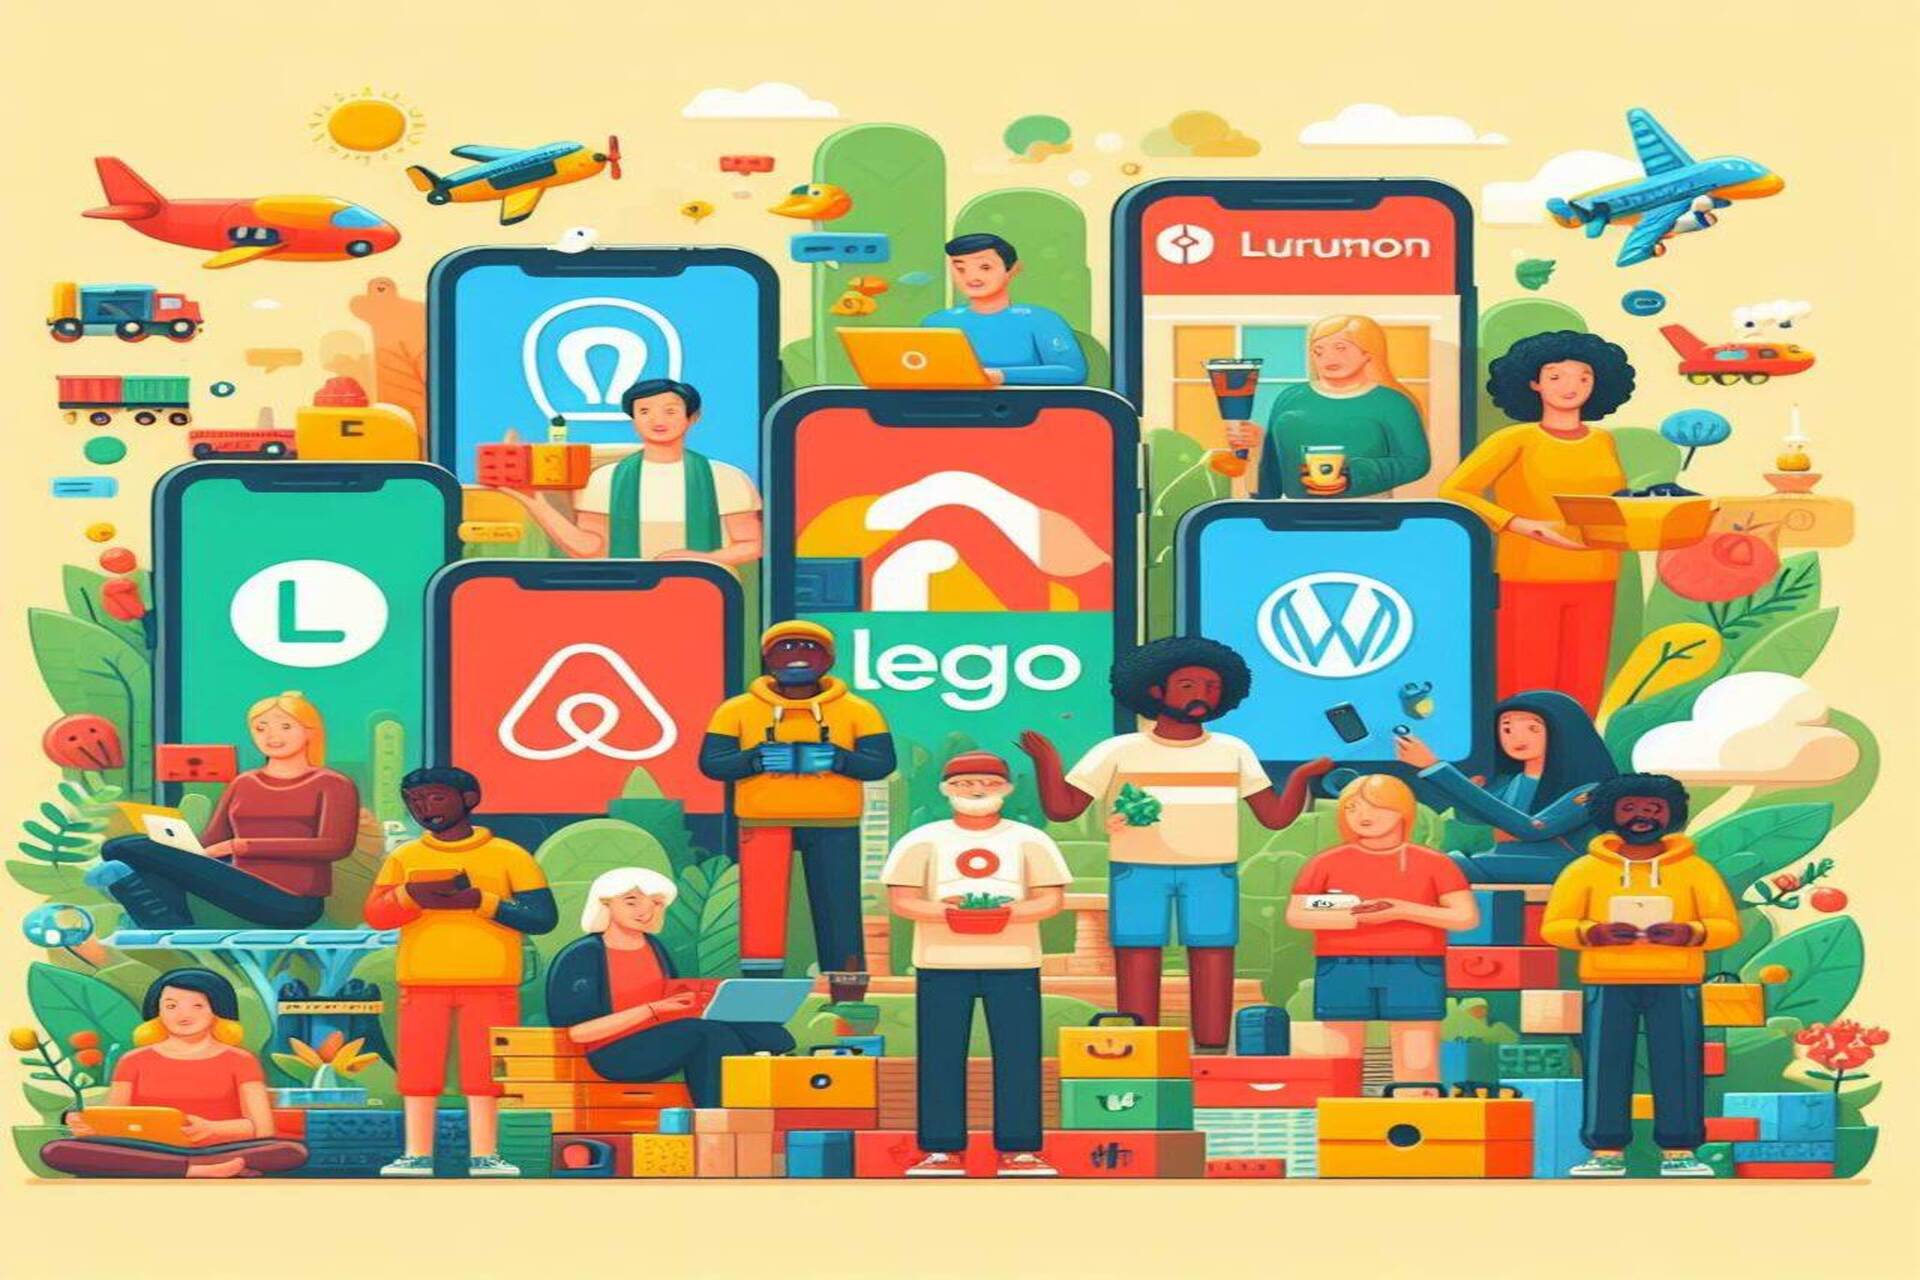 Skupnost in množica: Airbnb, Etsy, GitHub, Stack Overflow, Lego Ideas, WordPress, Linux in Lululemon so odlični primeri aplikacij »skupnosti«.